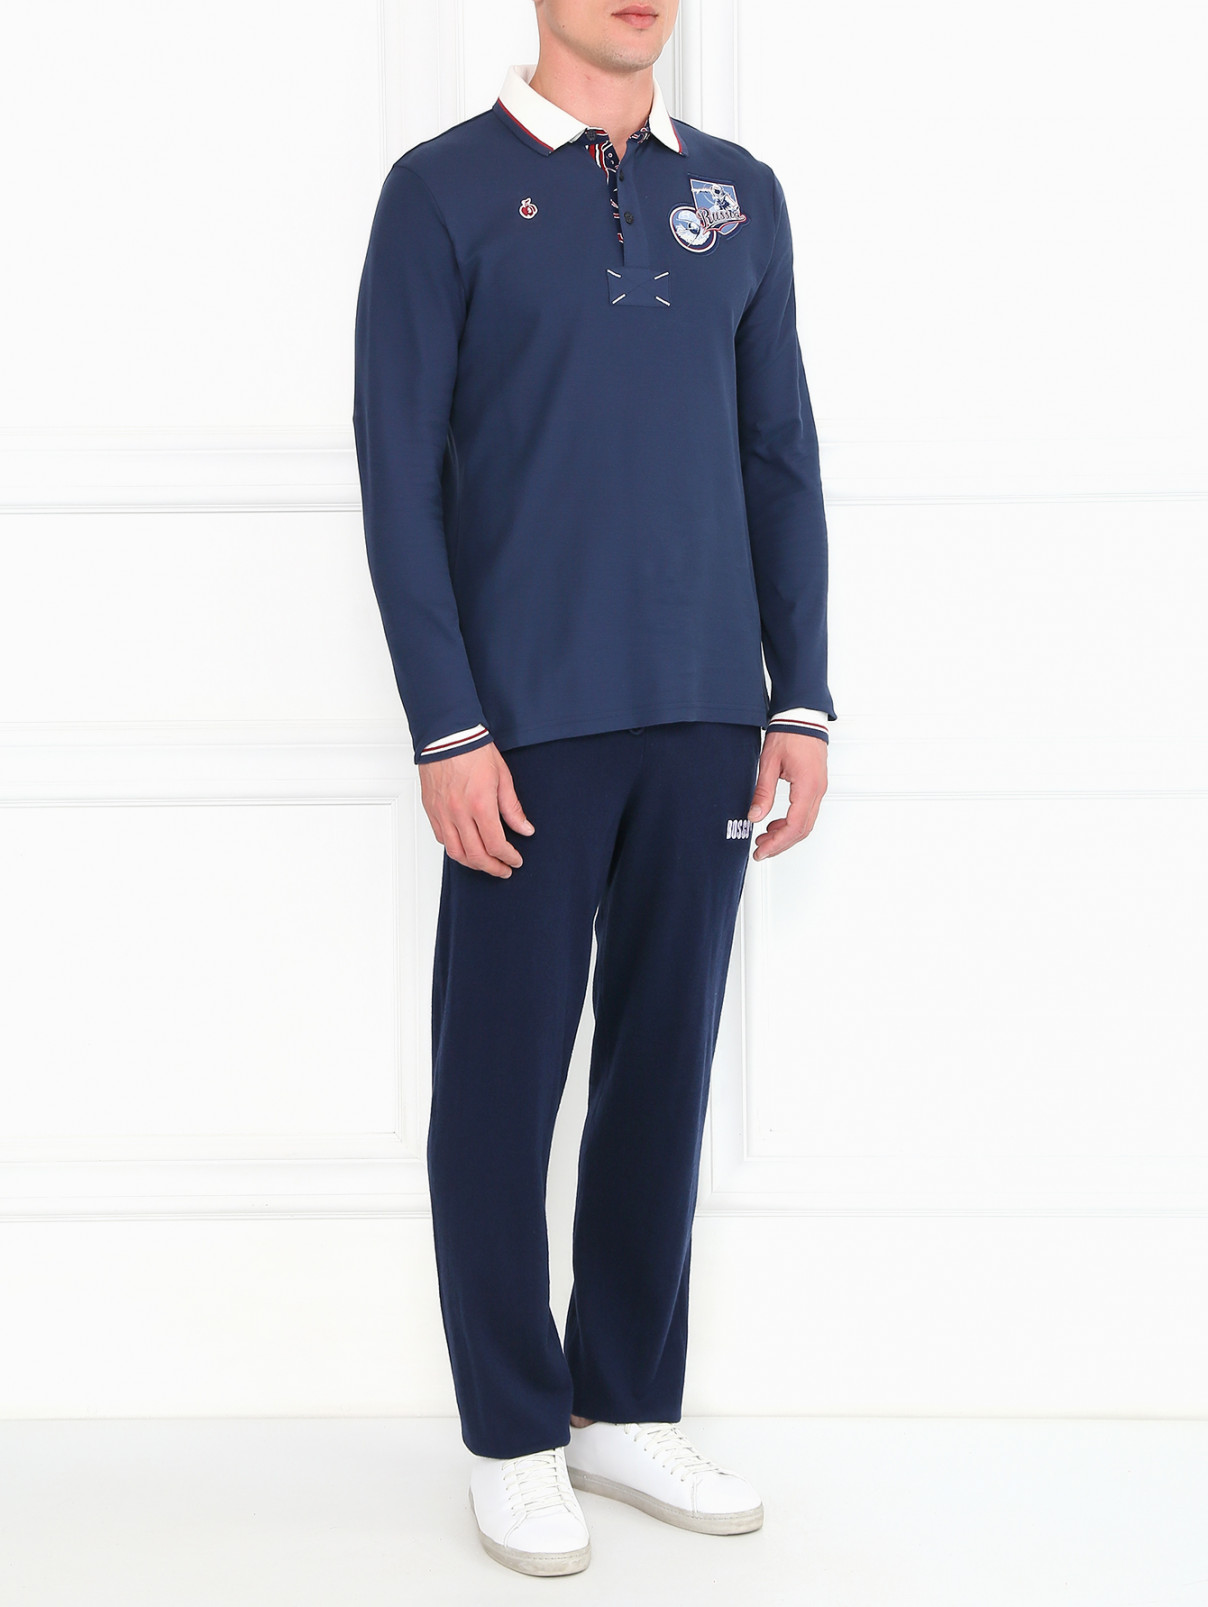 Спортивные брюки из хлопка и шерсти BOSCO  –  Модель Общий вид  – Цвет:  Синий